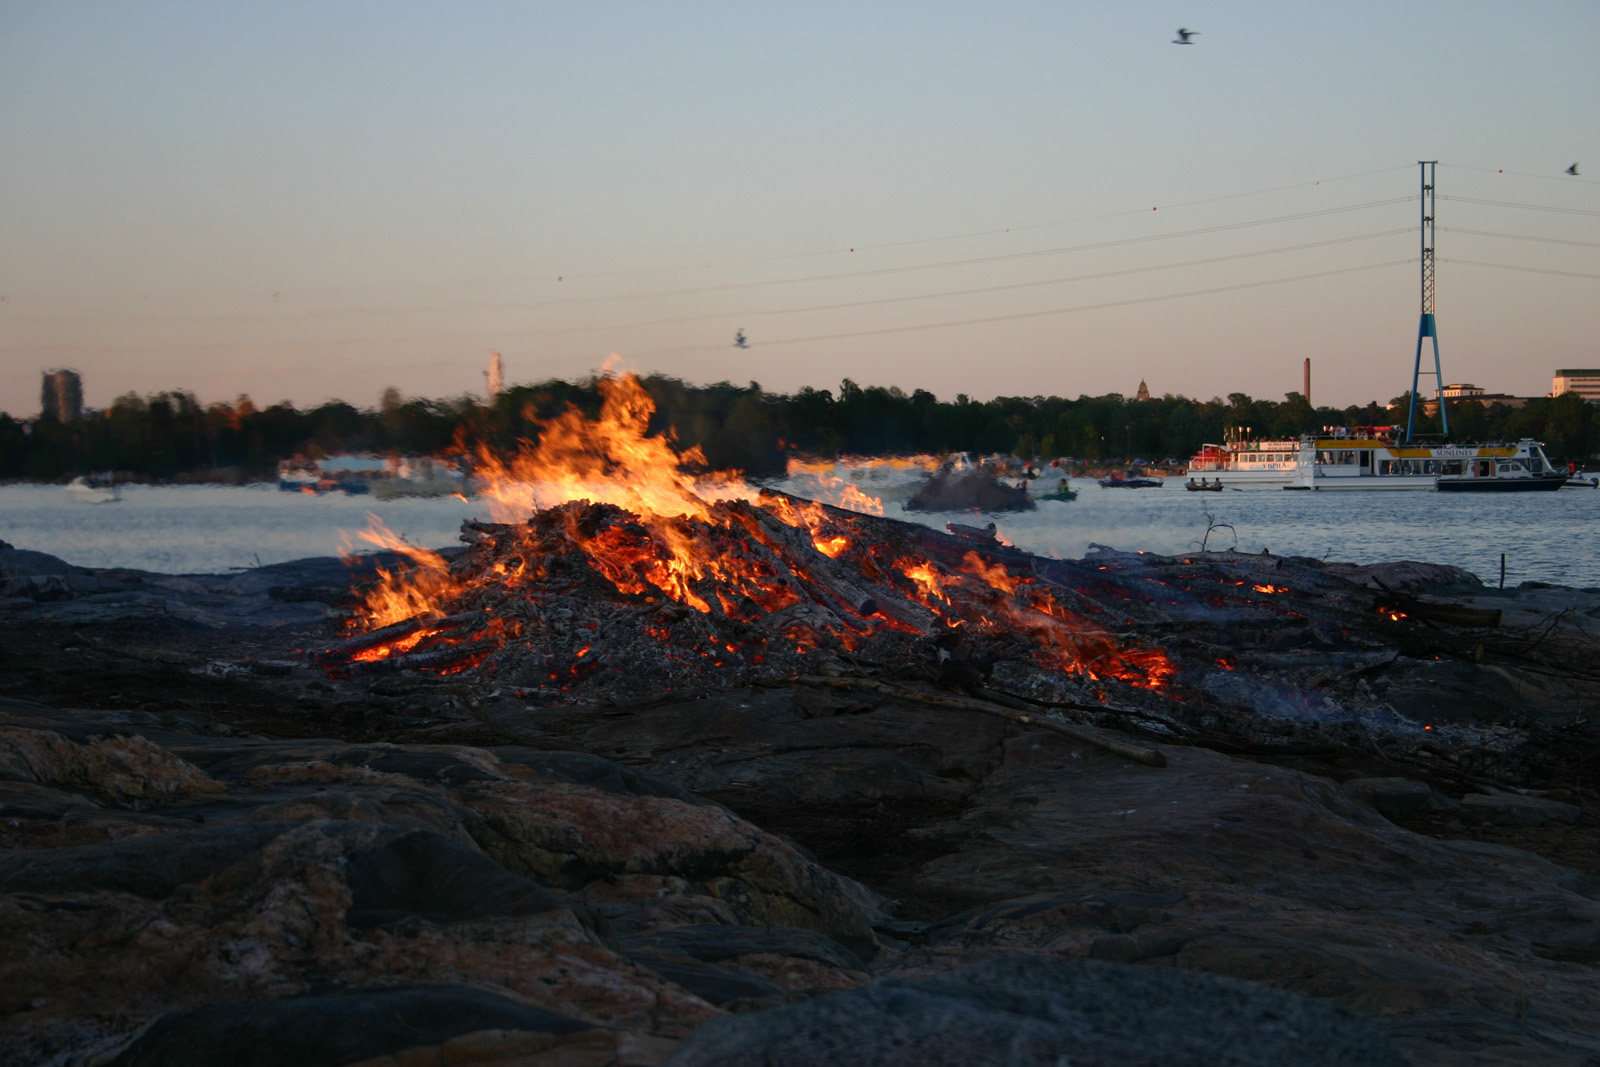 A smaller bonfire on shore..